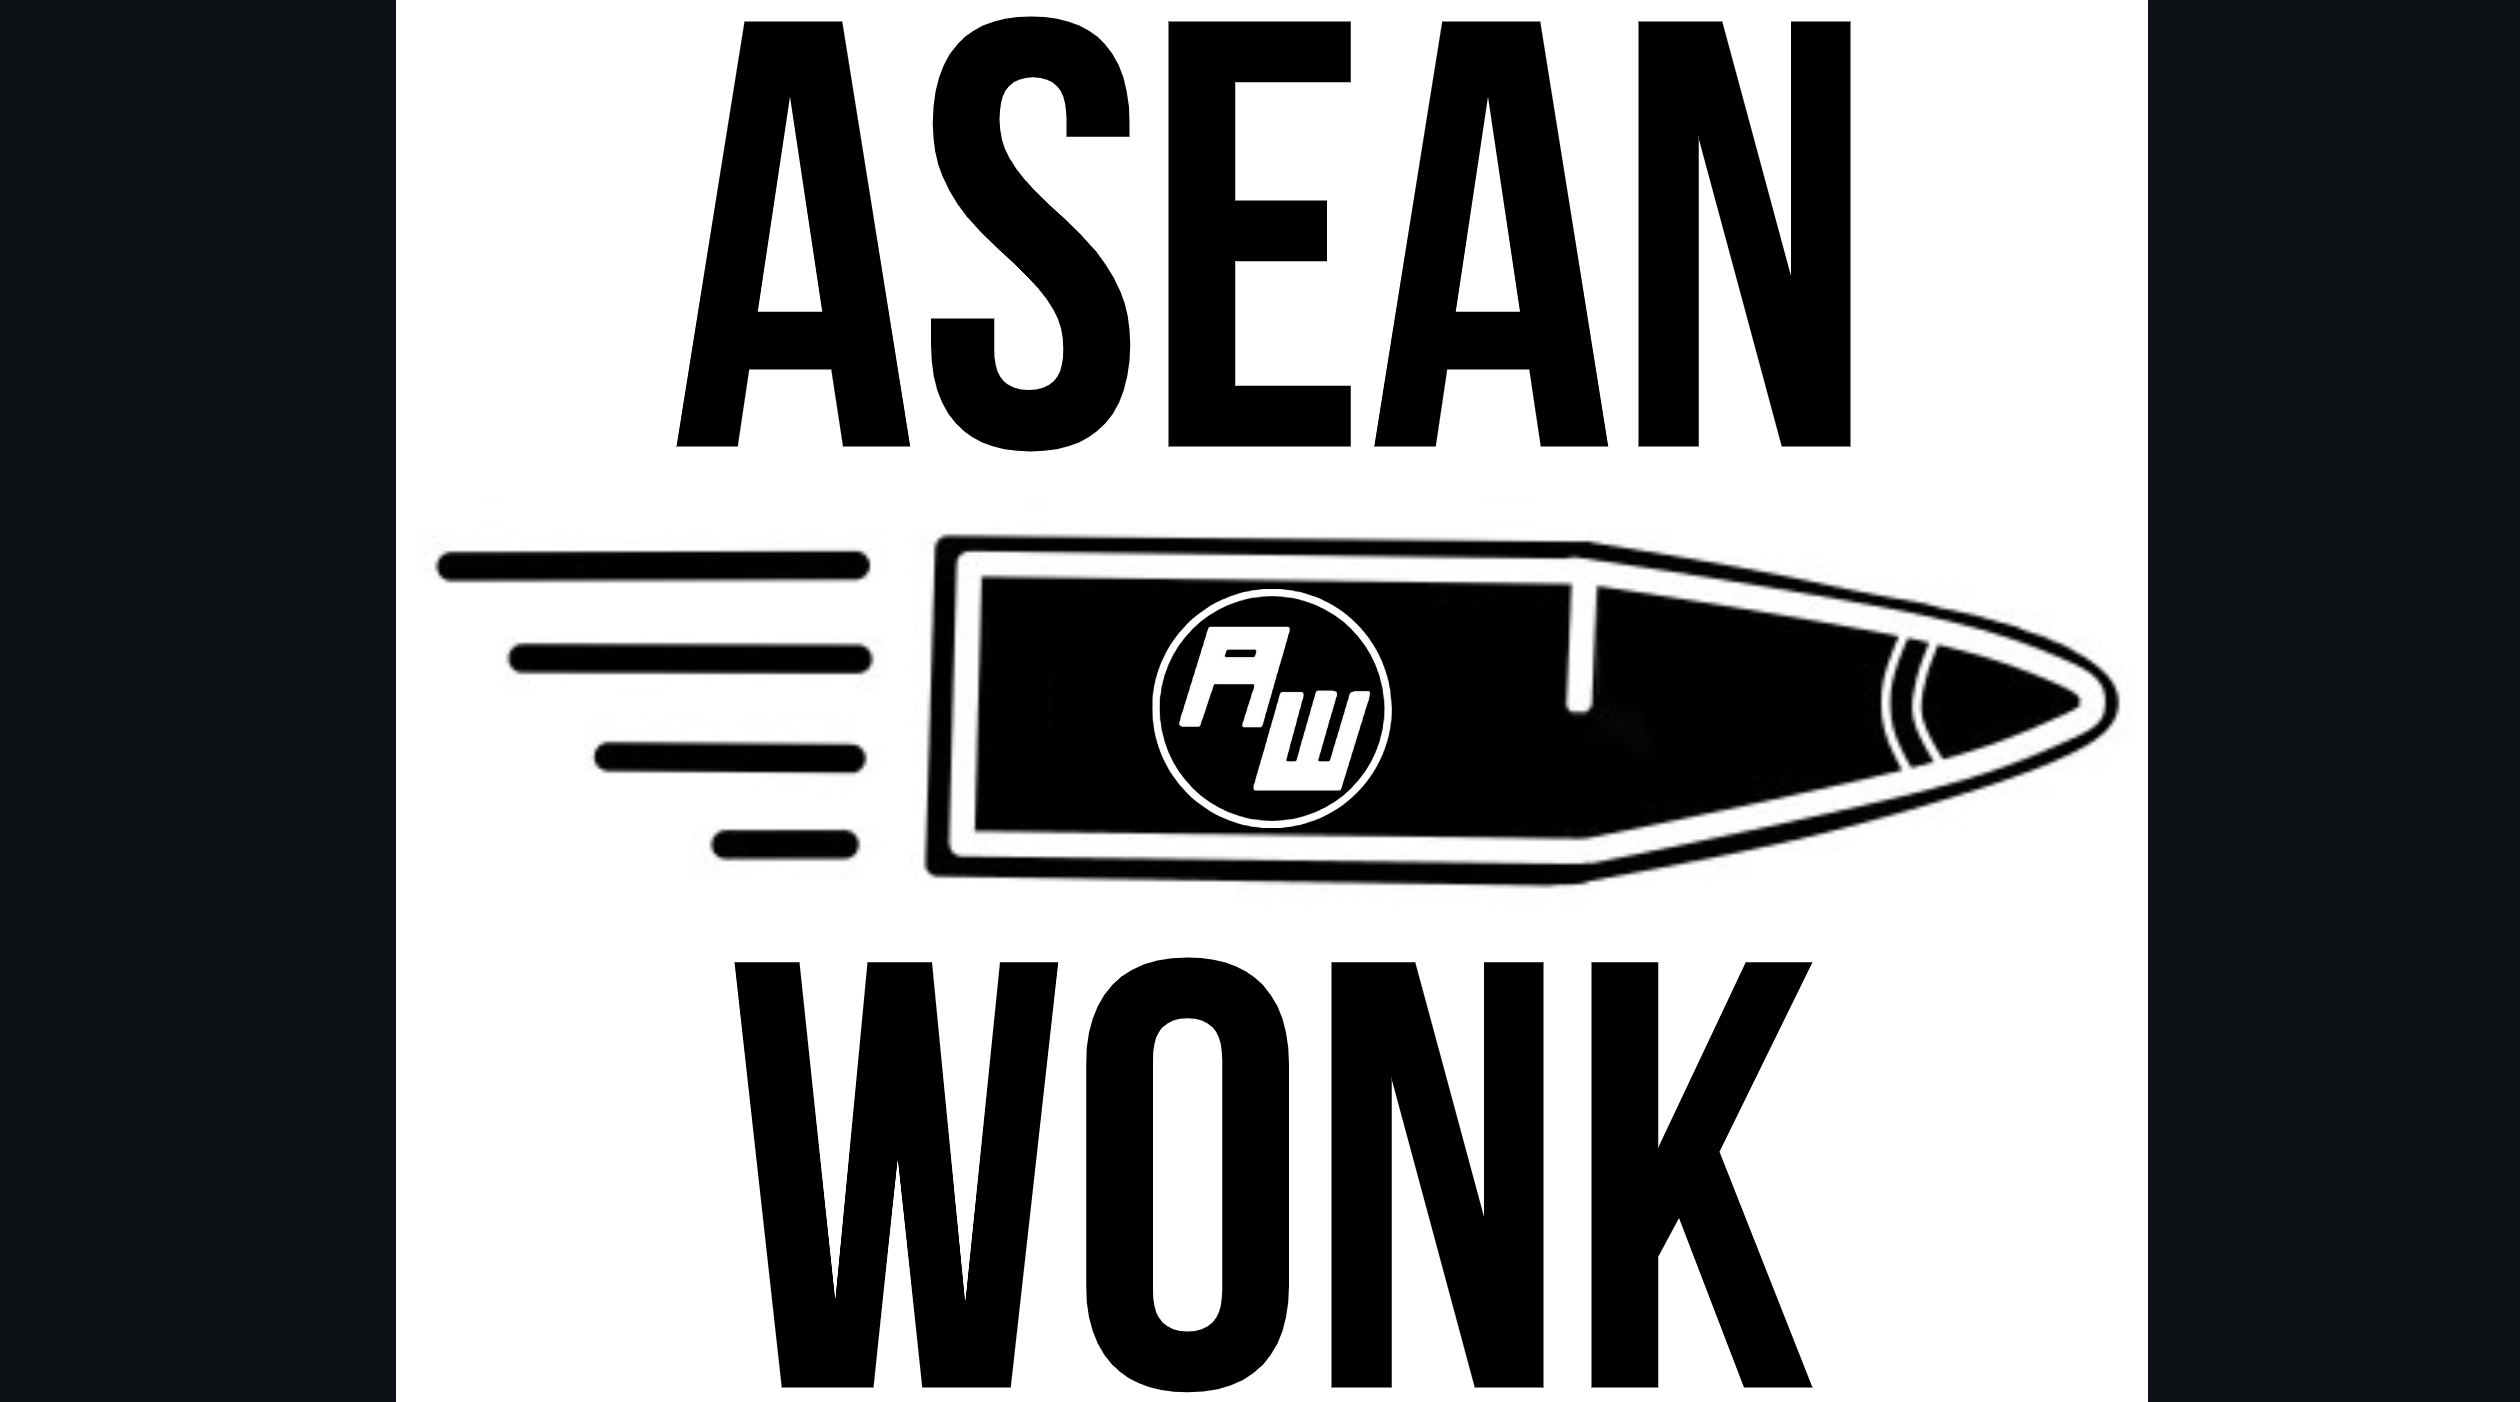 ASEAN Wonk